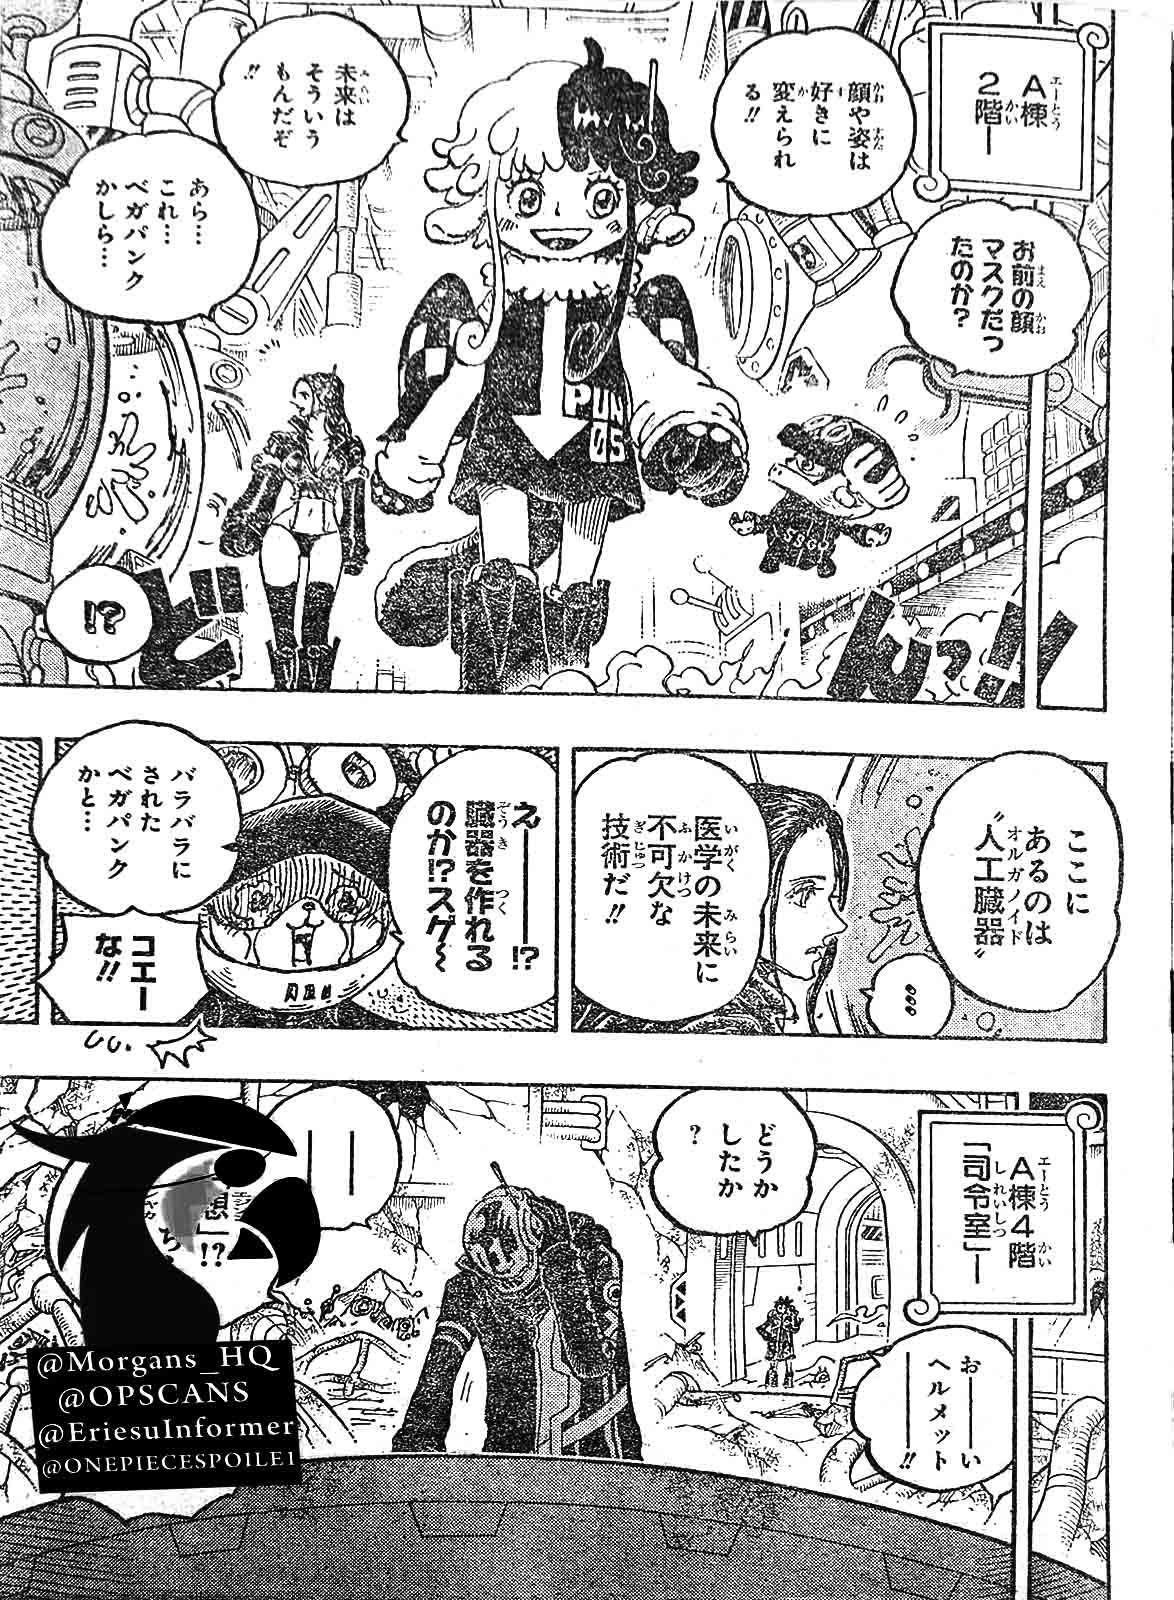 Baca manga komik One Piece Berwarna Bahasa Indonesia HD Chapter 1075r